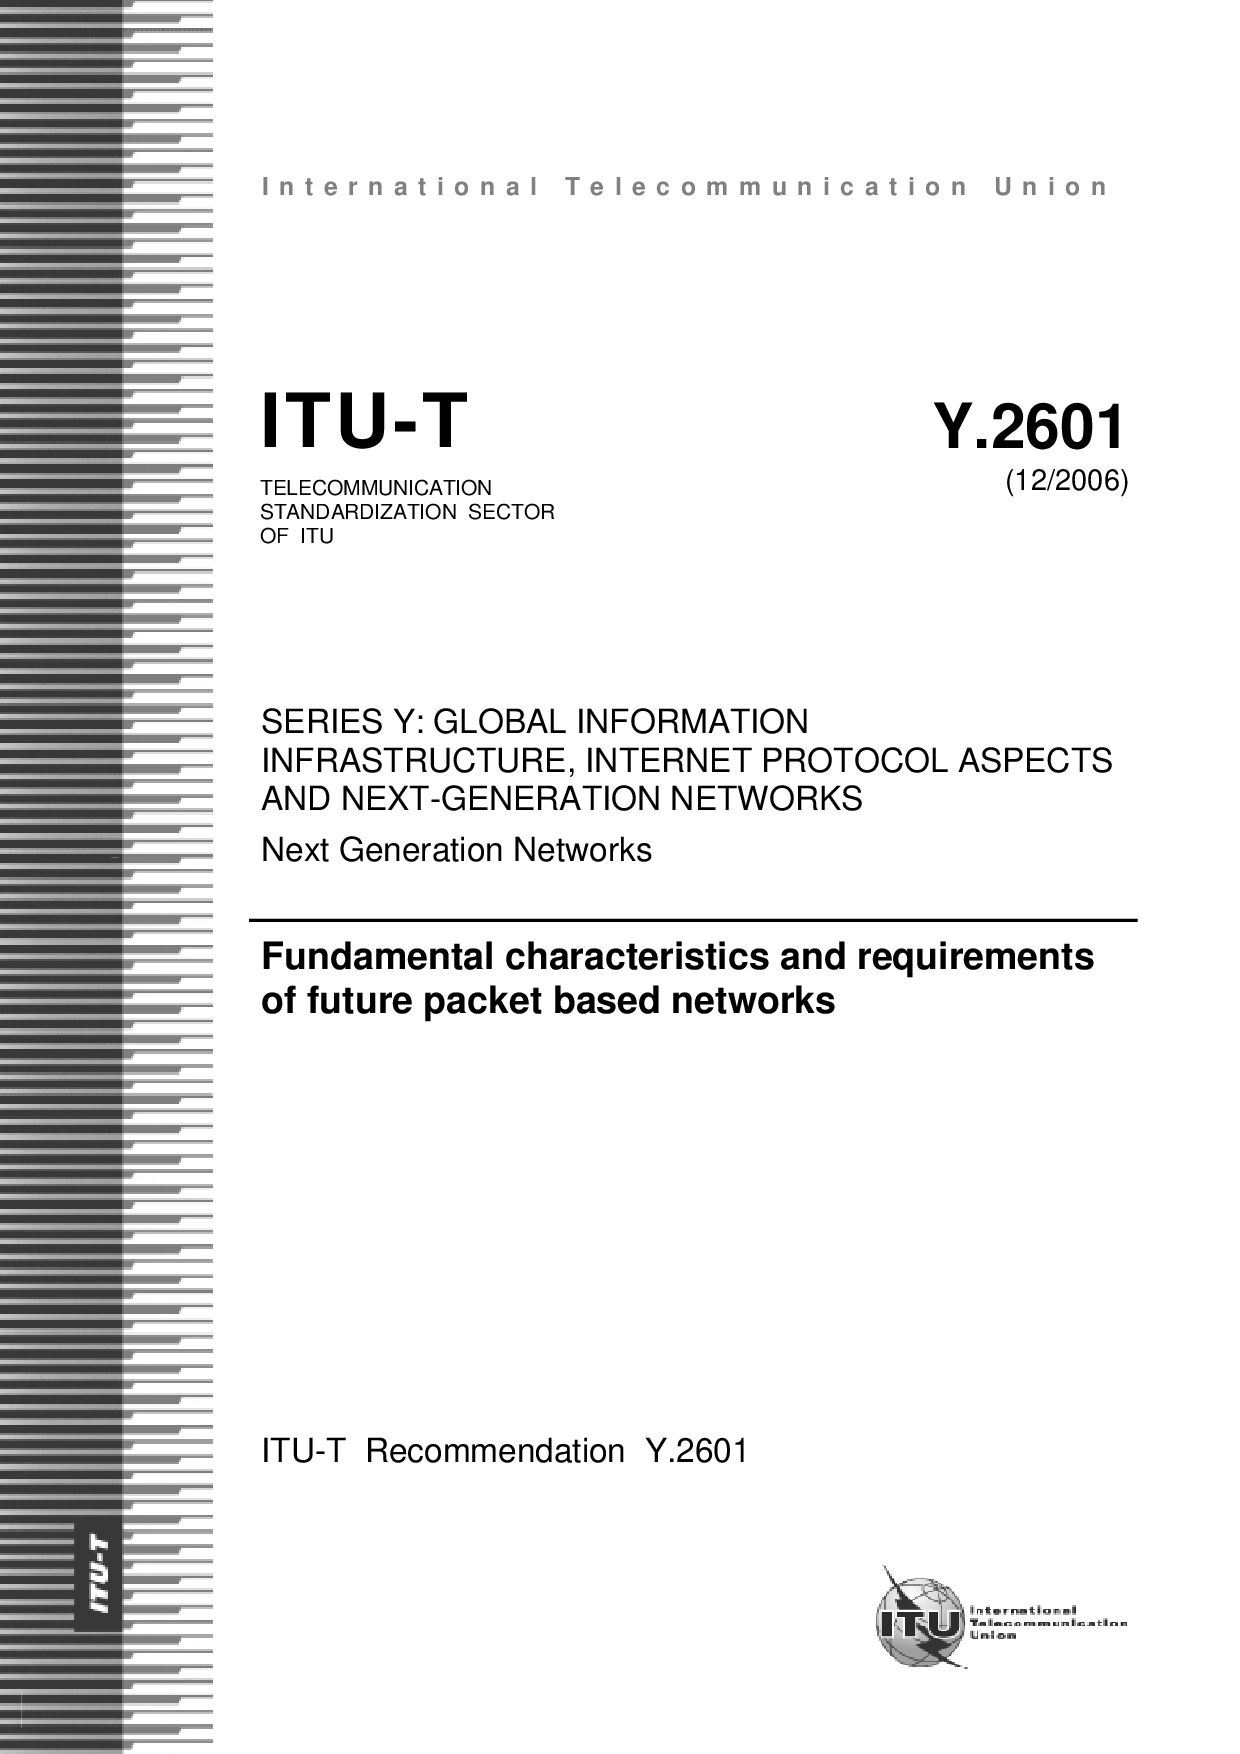 ITU-T Y.2601-2006